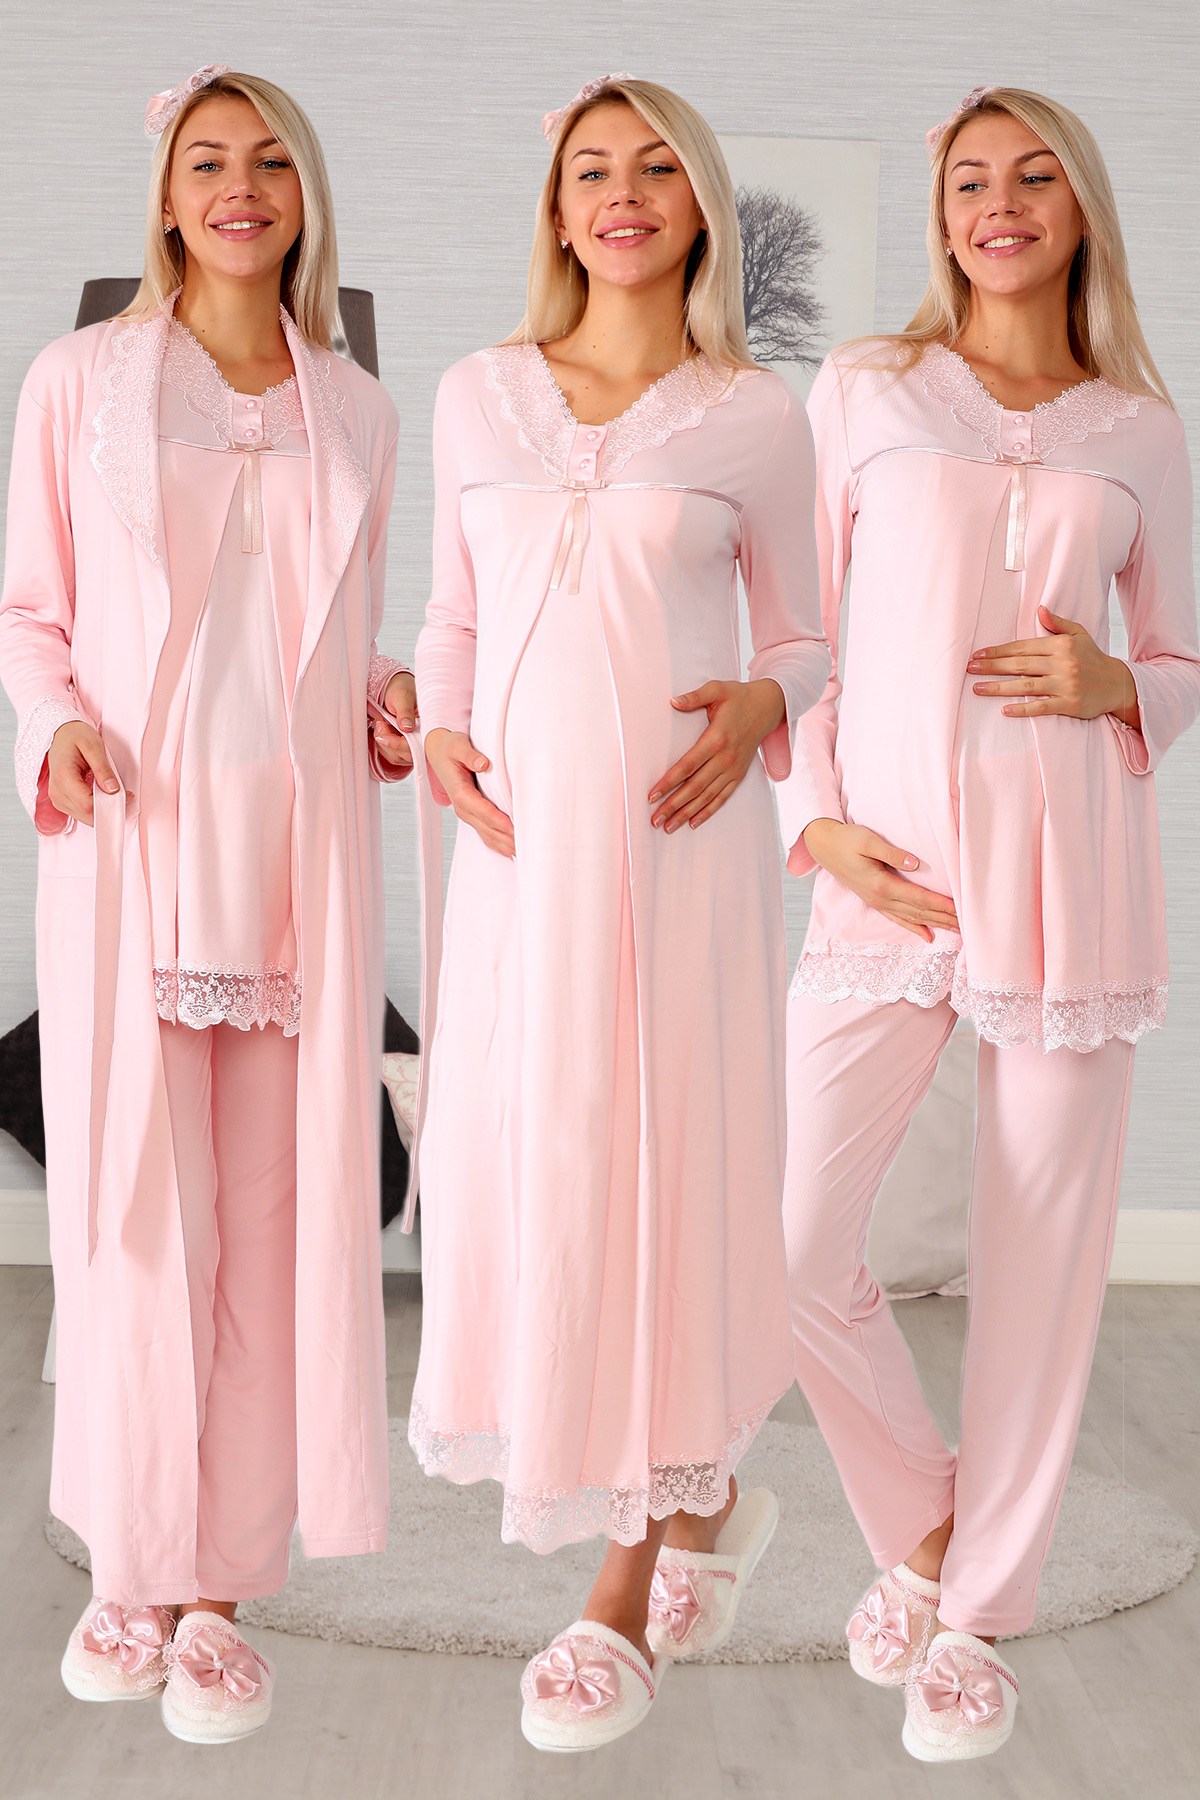 Lohusa Hamile 1094 Maternity Nursing Pajamas Set with Robe